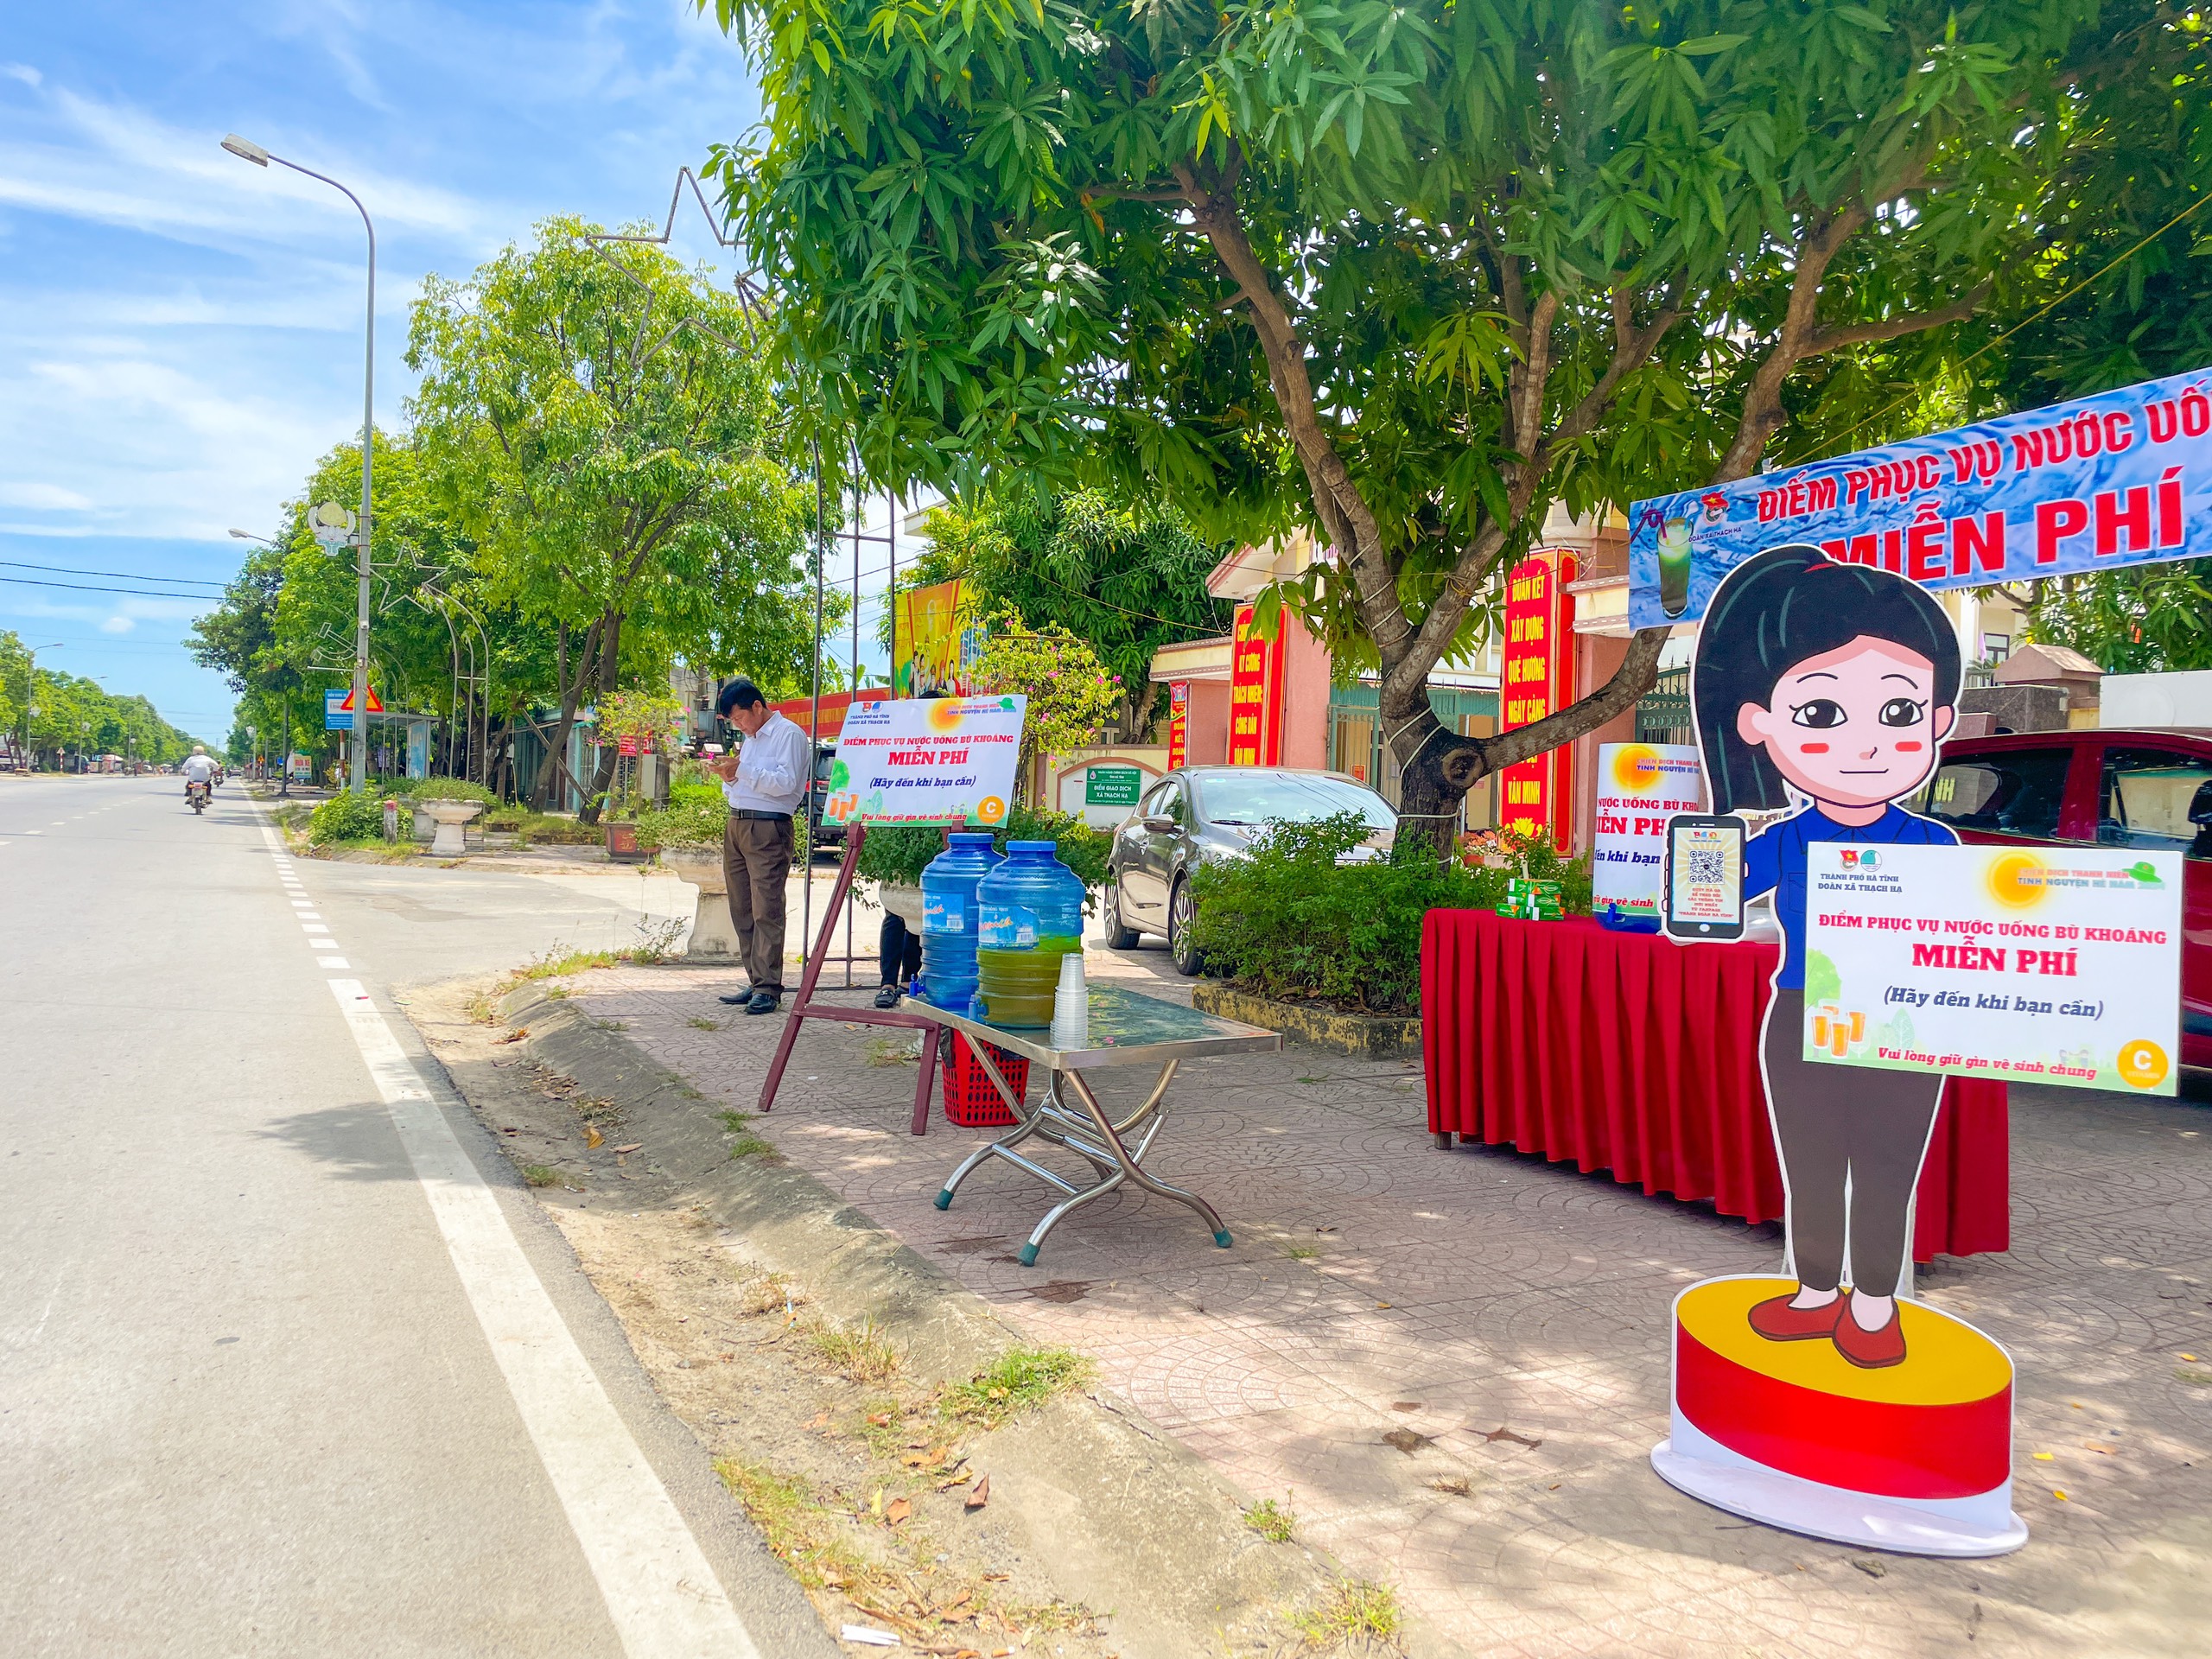 Tuổi trẻ Hà Tĩnh lập điểm cung cấp nước miễn phí giải nhiệt ngày nắng nóng